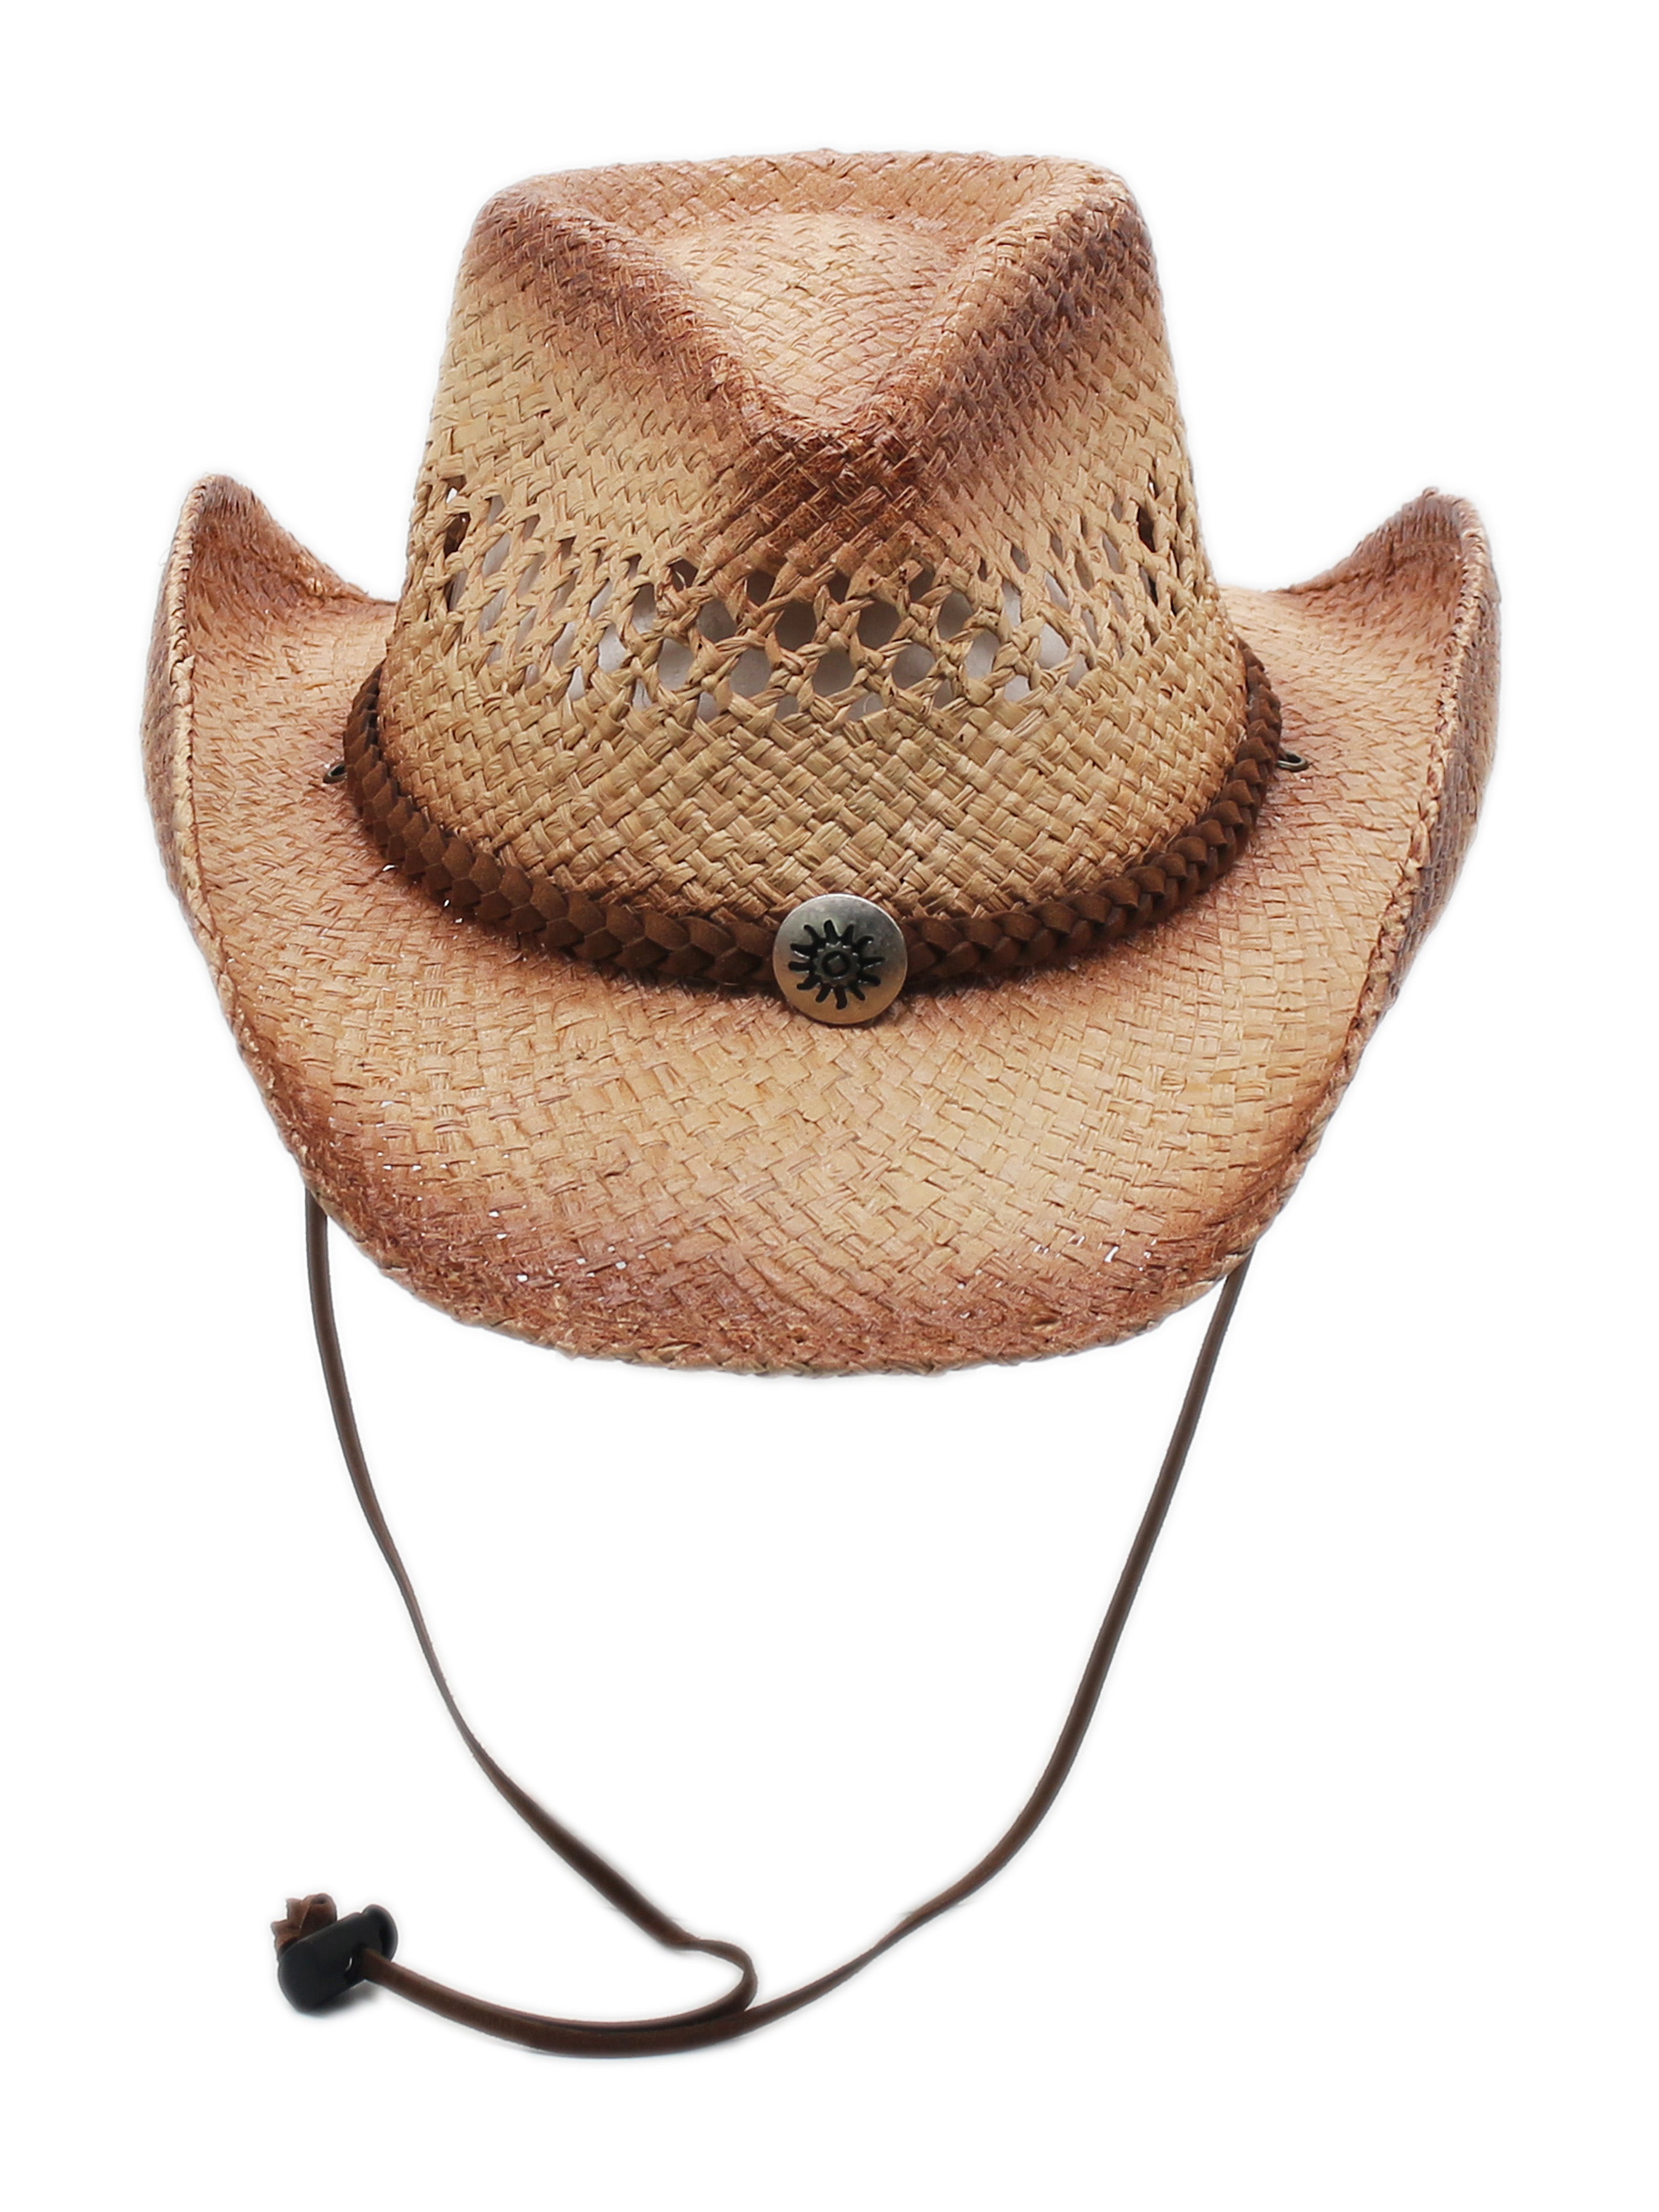 Silver Canyon Men&#39;s Tucson Raffia Straw Cowboy Sun Hat w/ Chin Strap - Natural